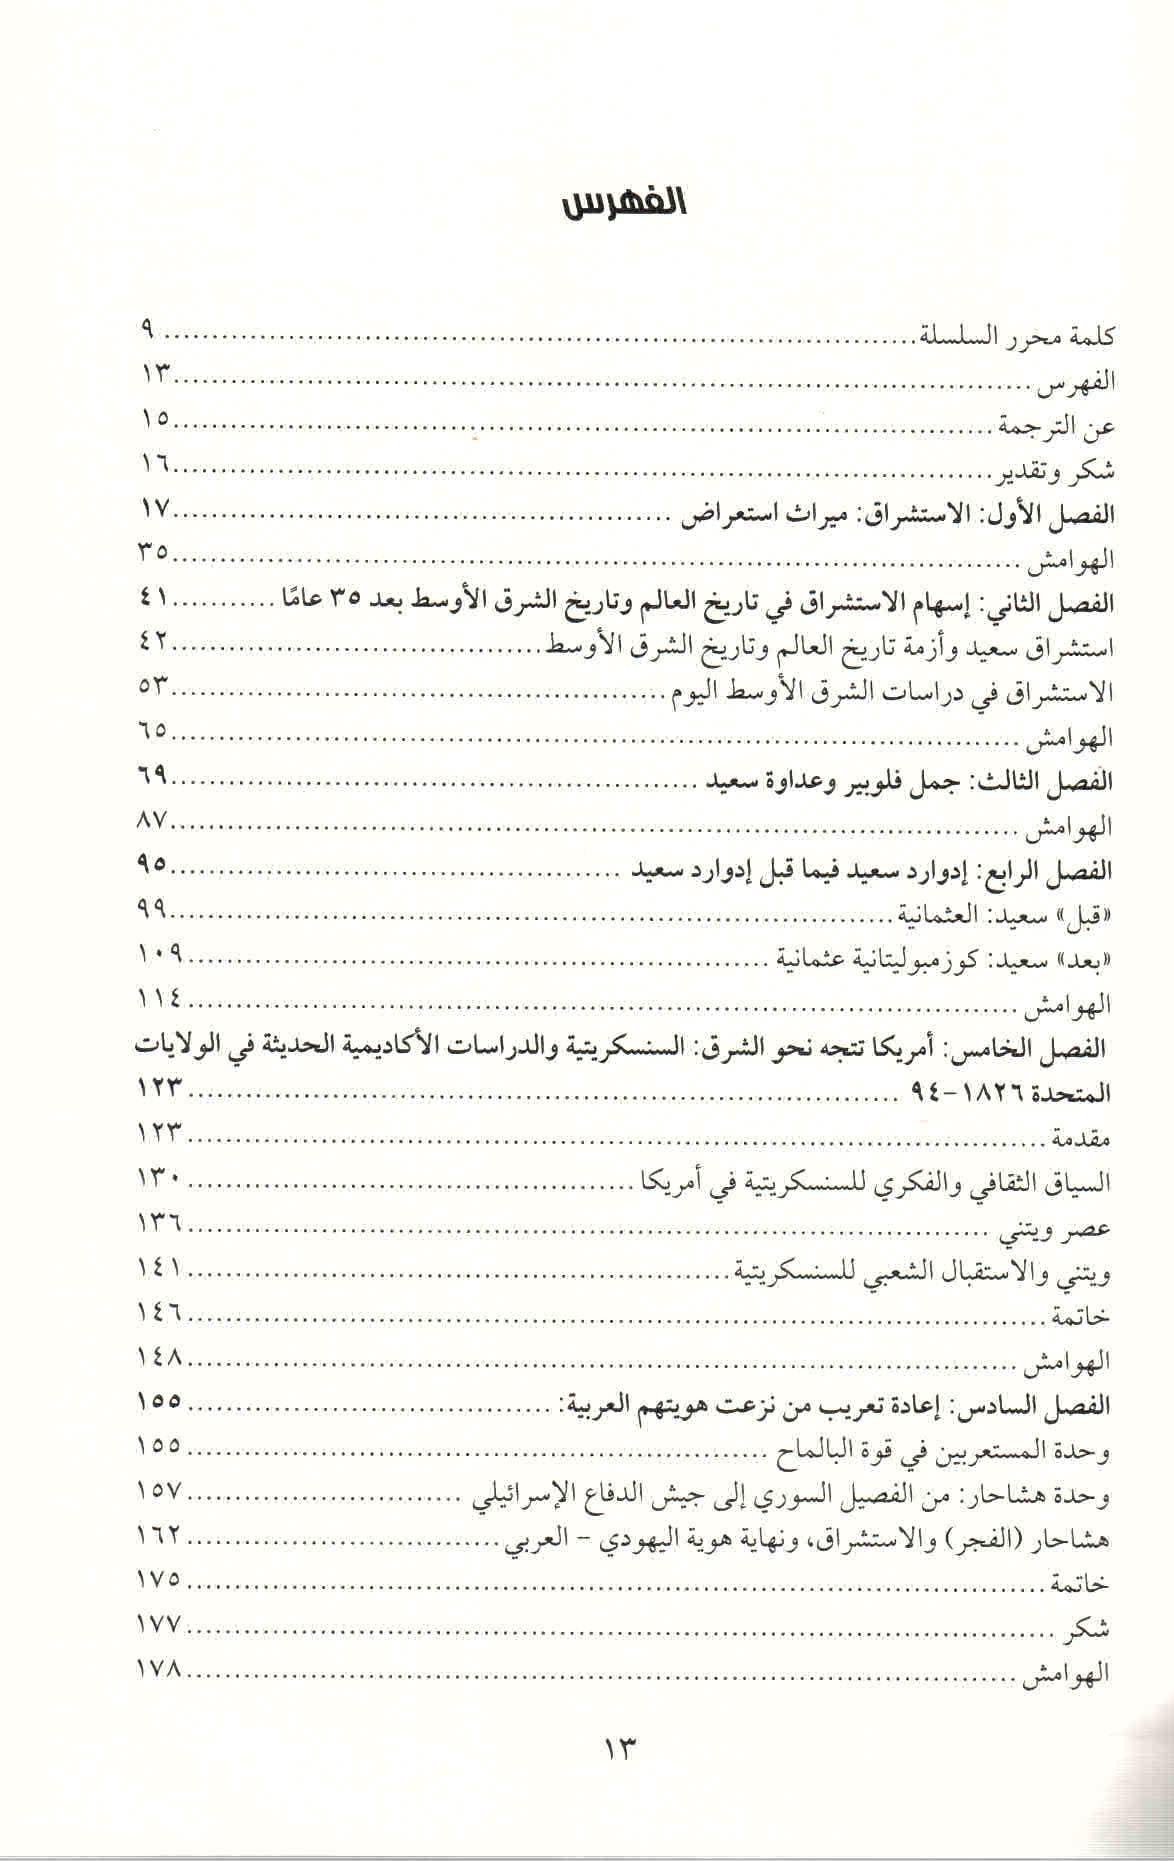 ص. 13 قائمة محتويات كتاب محاورة الاستشراق.